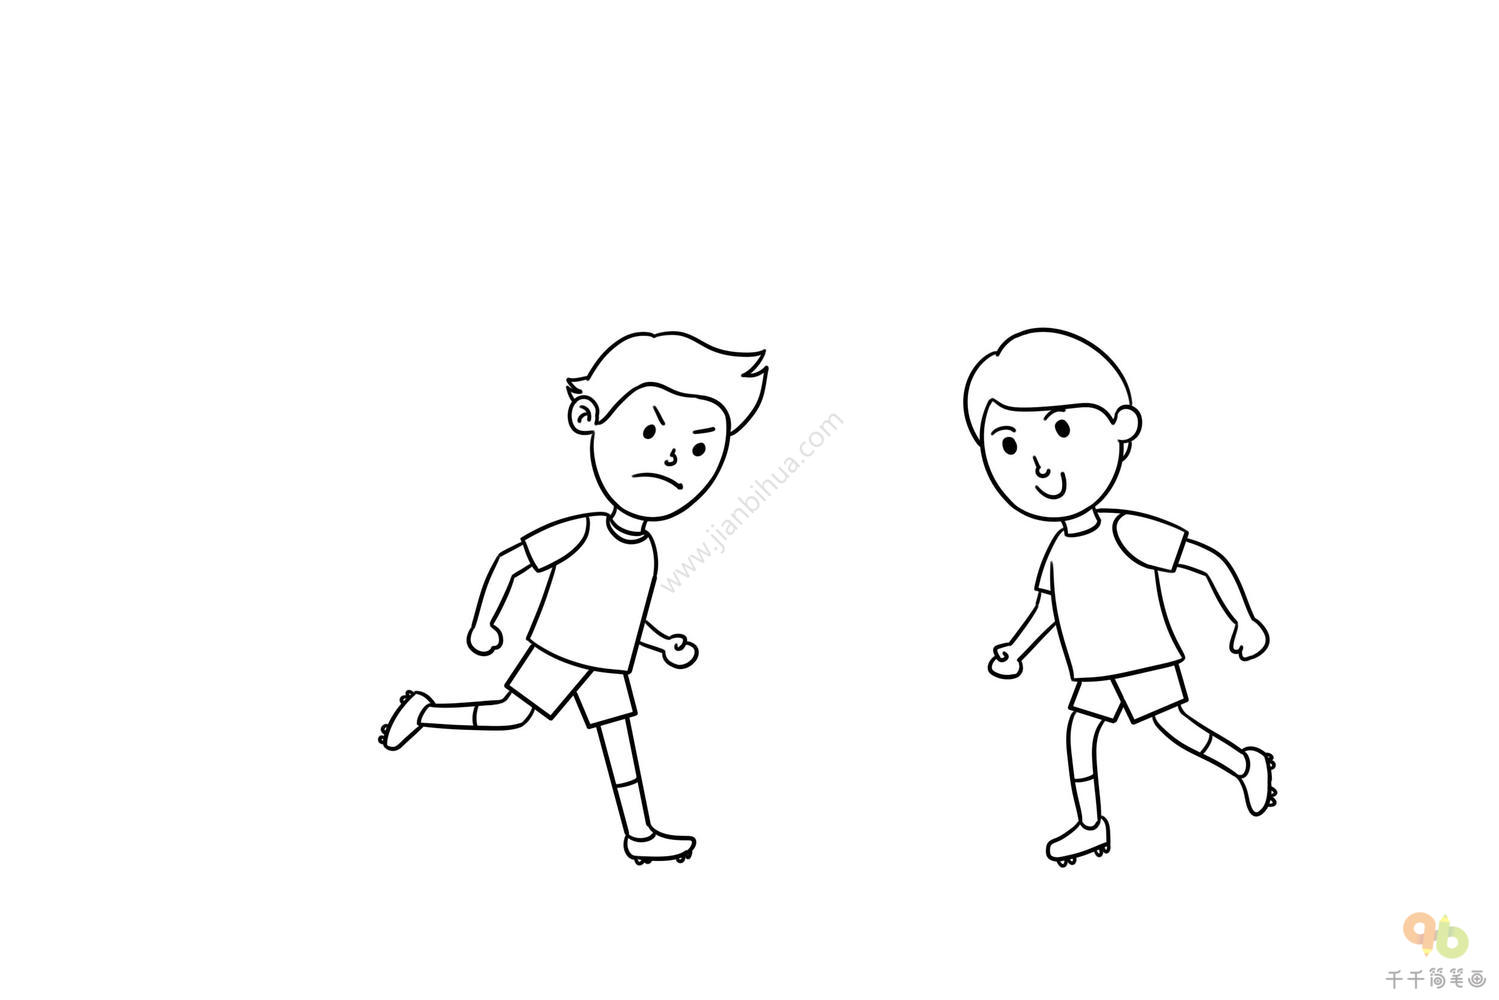 踢球的小男孩简笔画步骤图_兴趣运动